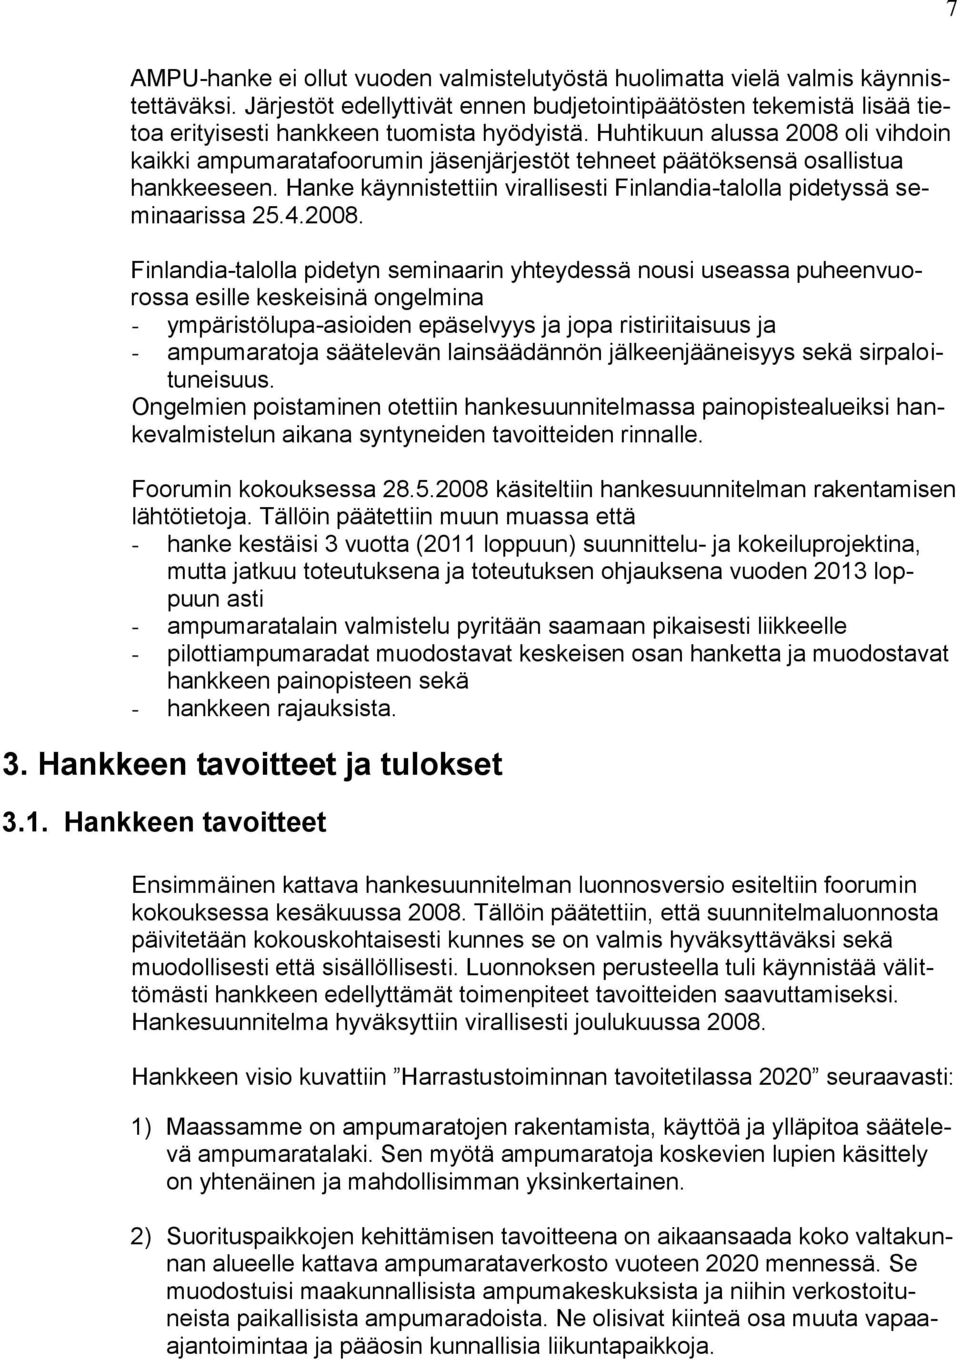 Huhtikuun alussa 2008 oli vihdoin kaikki ampumaratafoorumin jäsenjärjestöt tehneet päätöksensä osallistua hankkeeseen. Hanke käynnistettiin virallisesti Finlandia-talolla pidetyssä seminaarissa 25.4.